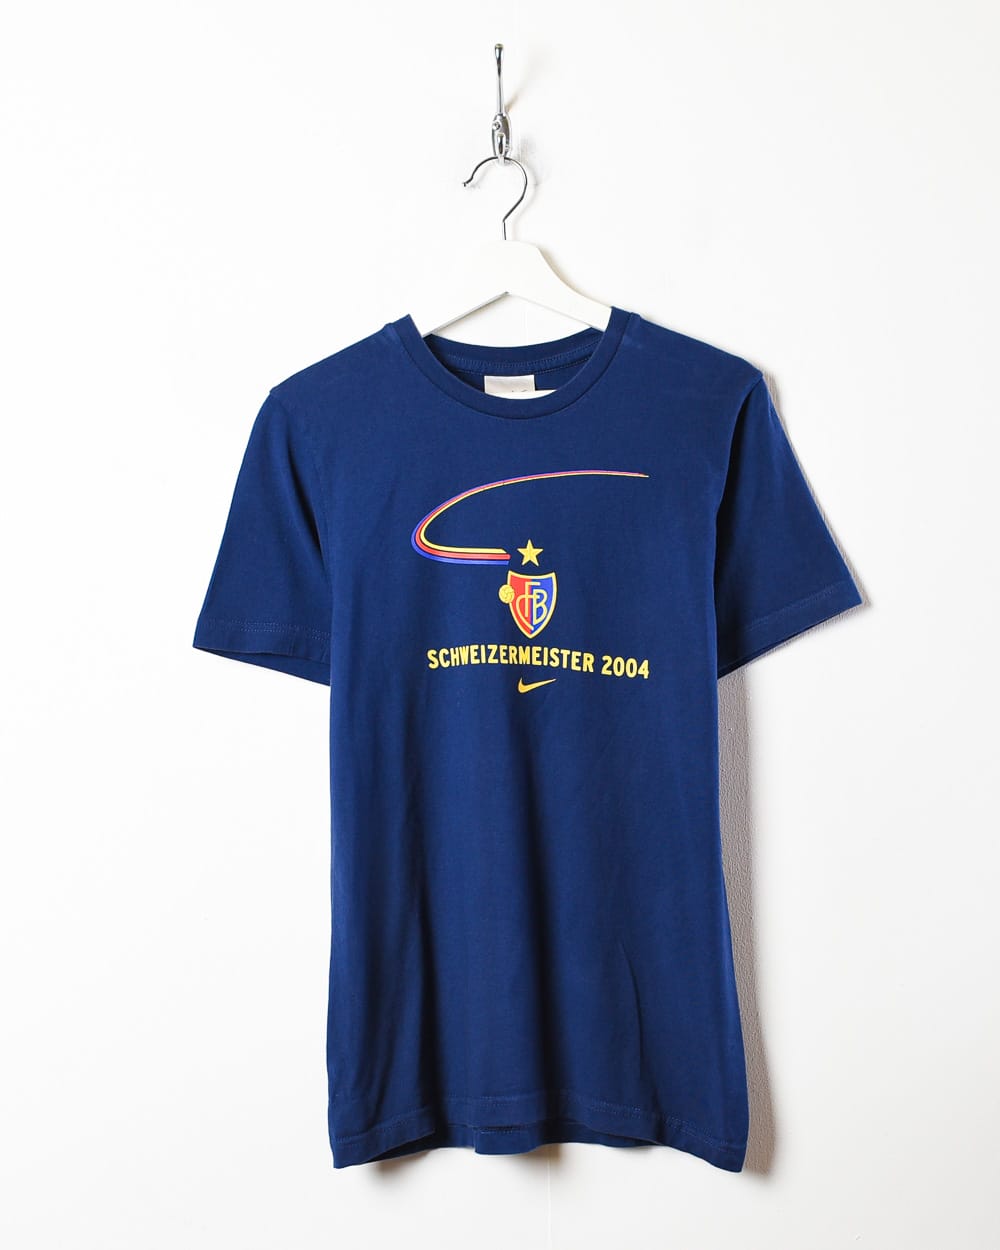 Navy Nike FC Basil 2004 T-Shirt - Medium